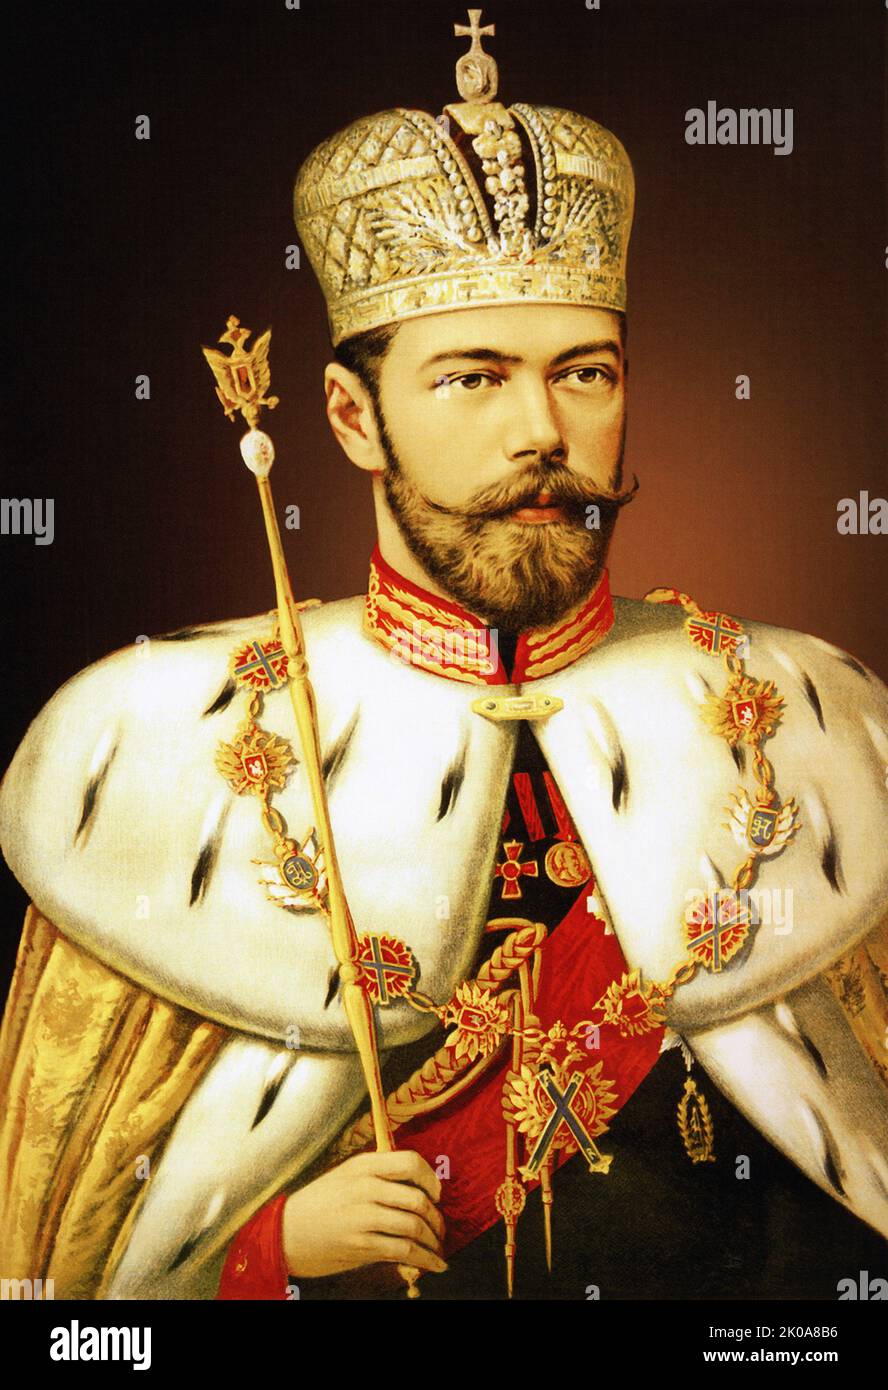 Porträt von Nikolaus II. Von Russland in seiner Krönungsrobe mit Kaiserkrone und Zepter, gemalt von Aleksandr Makovsky (1869-1924). 1896. Öl auf Leinwand Stockfoto